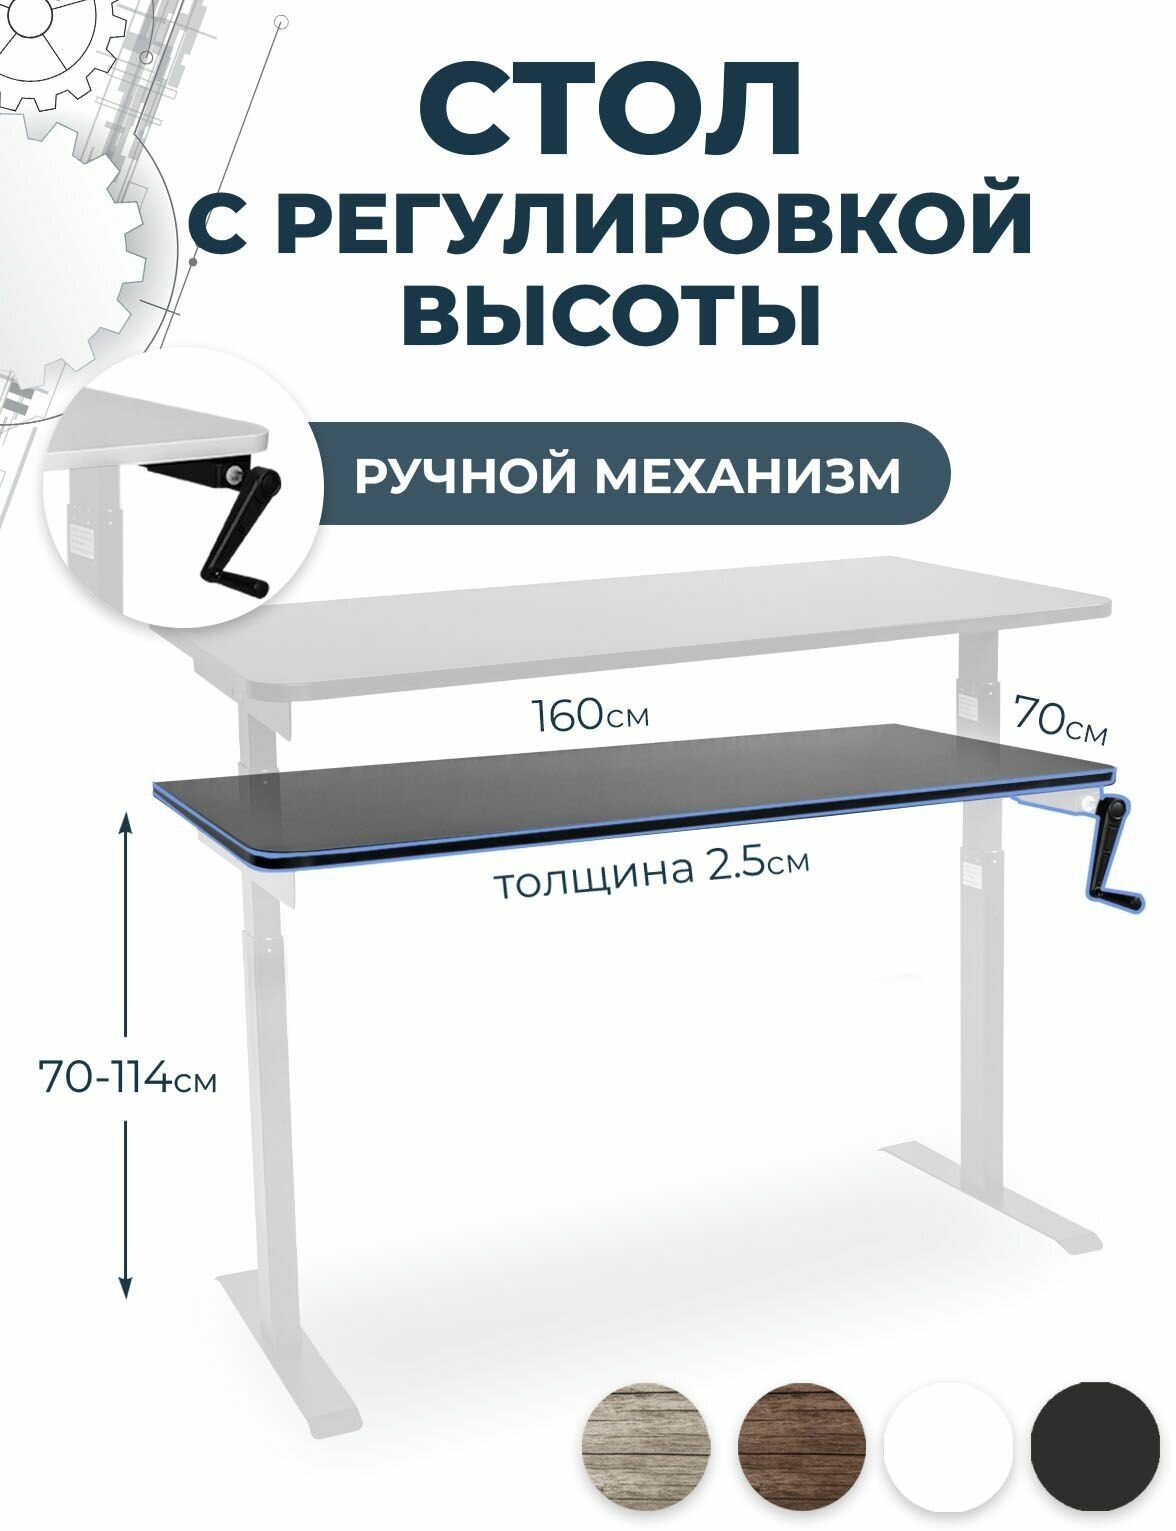 Стол c регулировкой высоты PROtect, черная столешница ЛДСП 160x70x2,5 см, белое подстолье М1